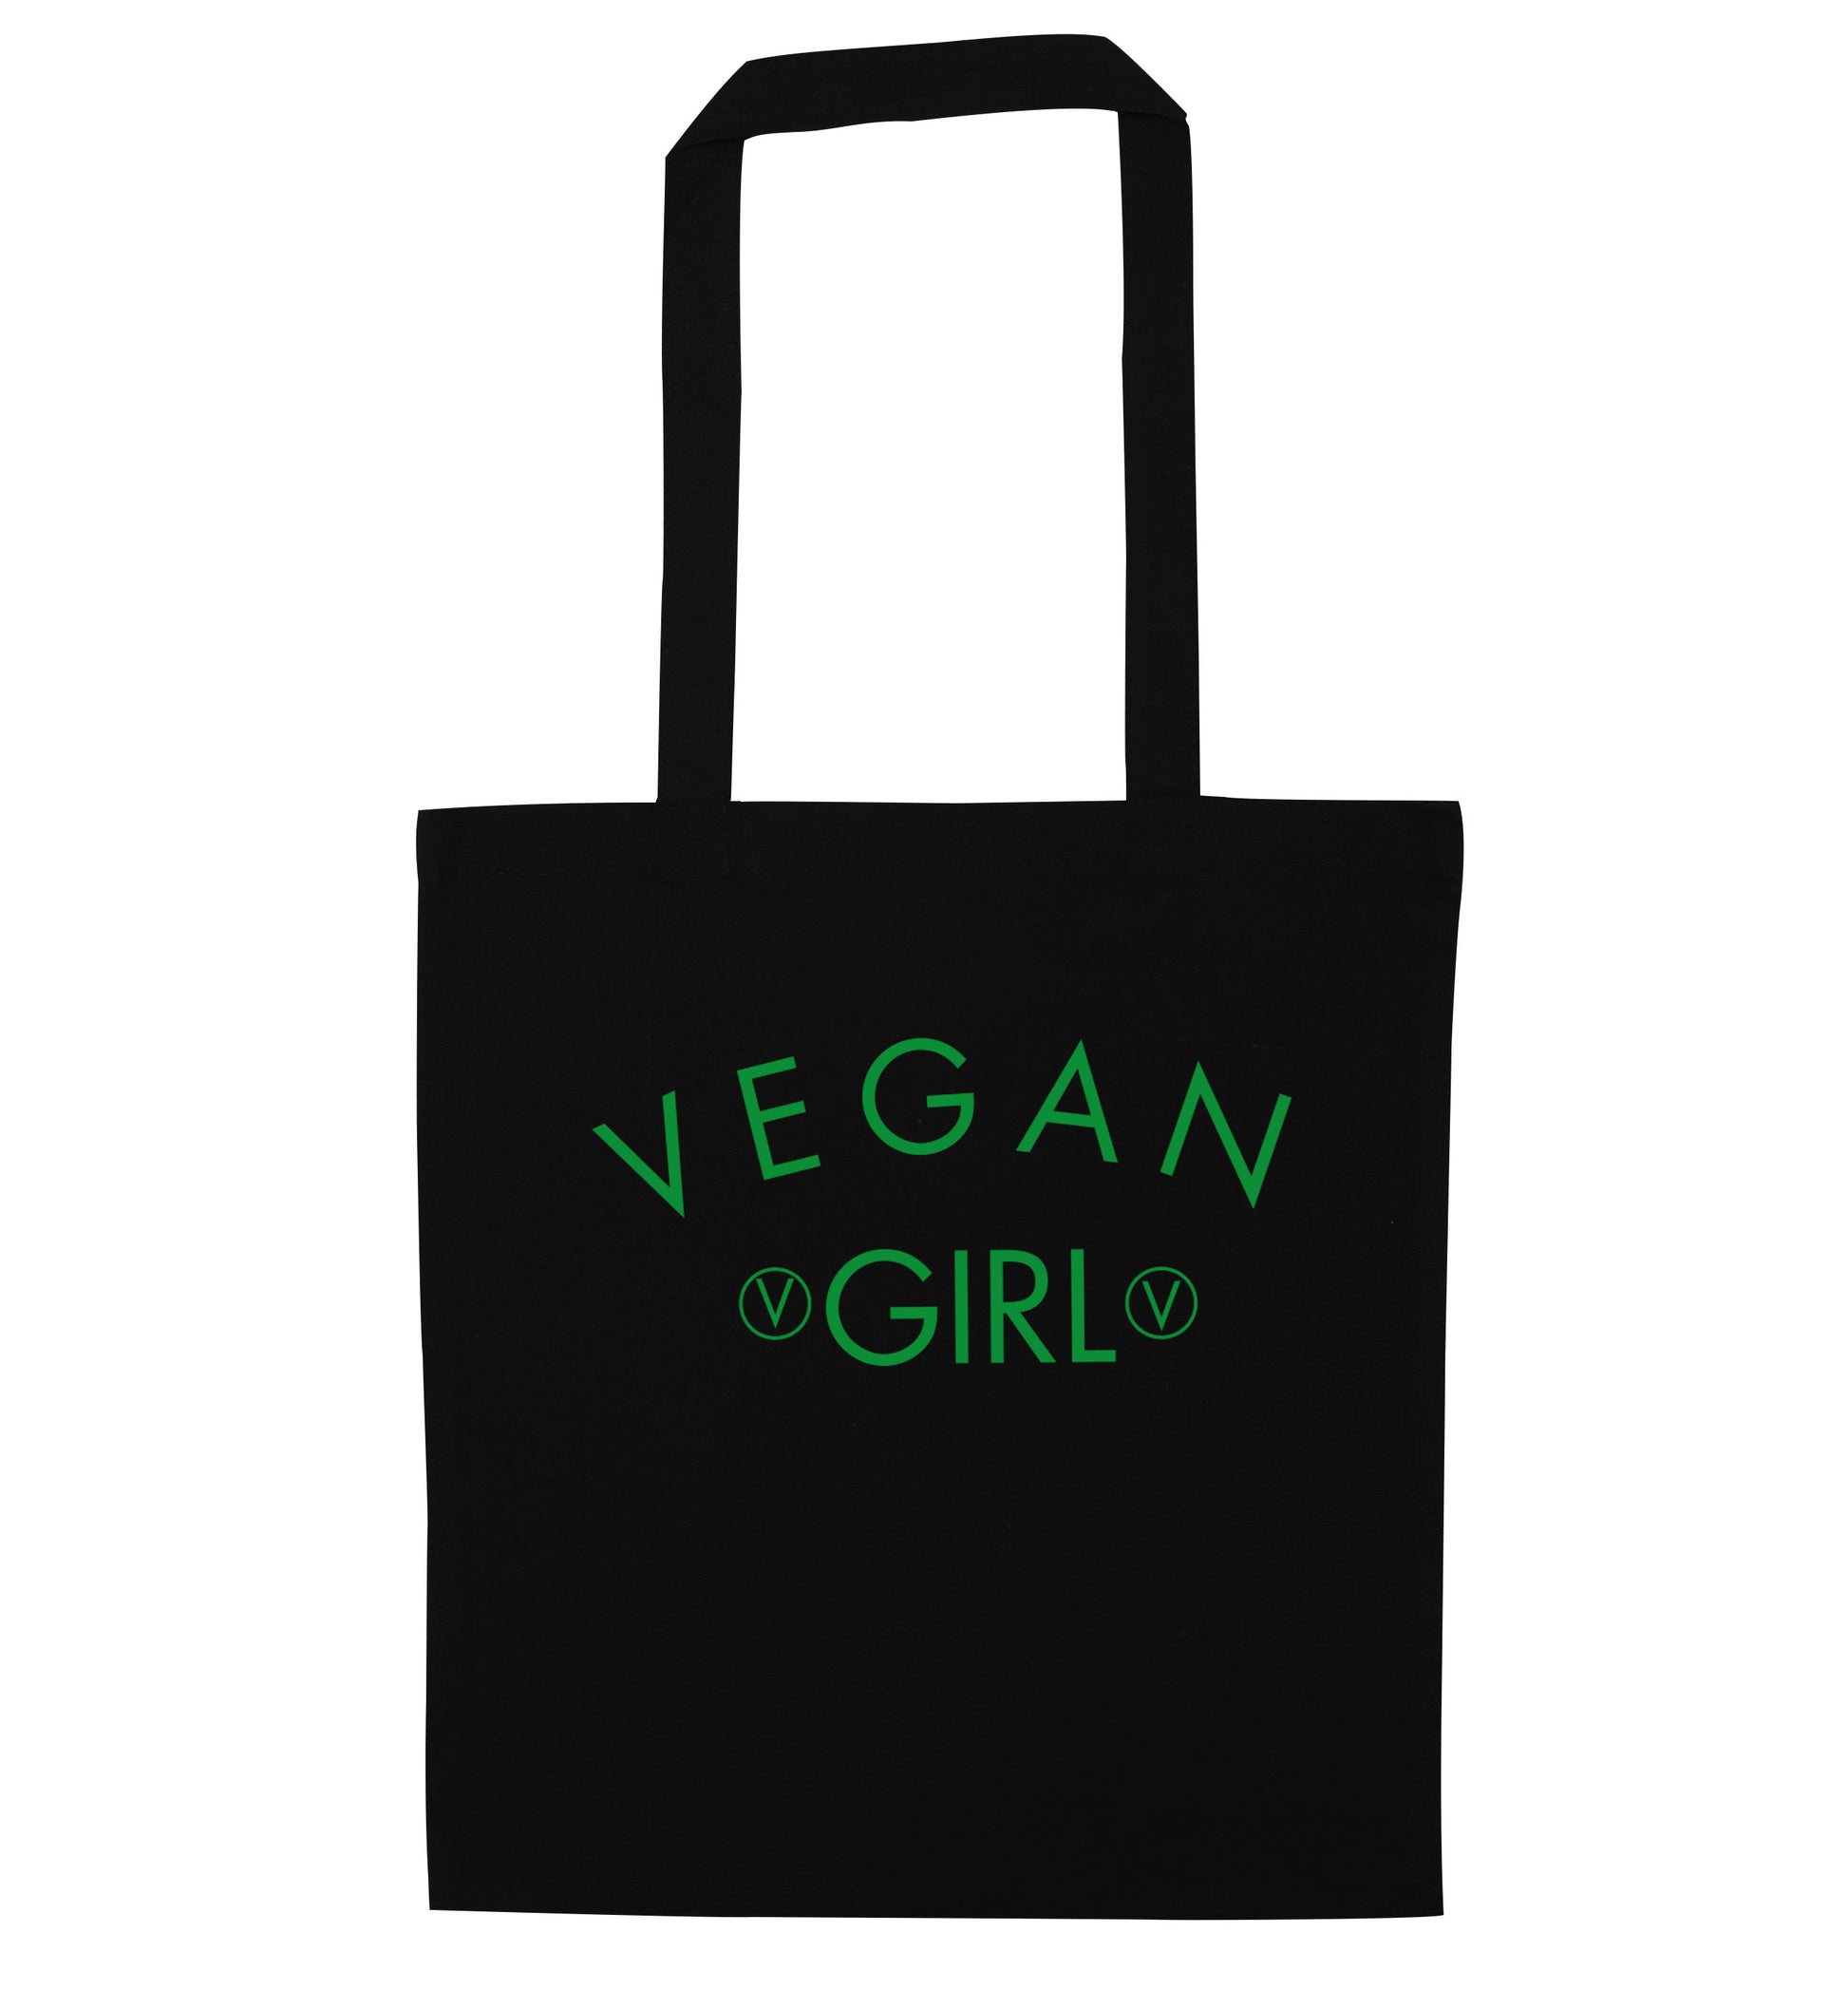 Vegan girl black tote bag